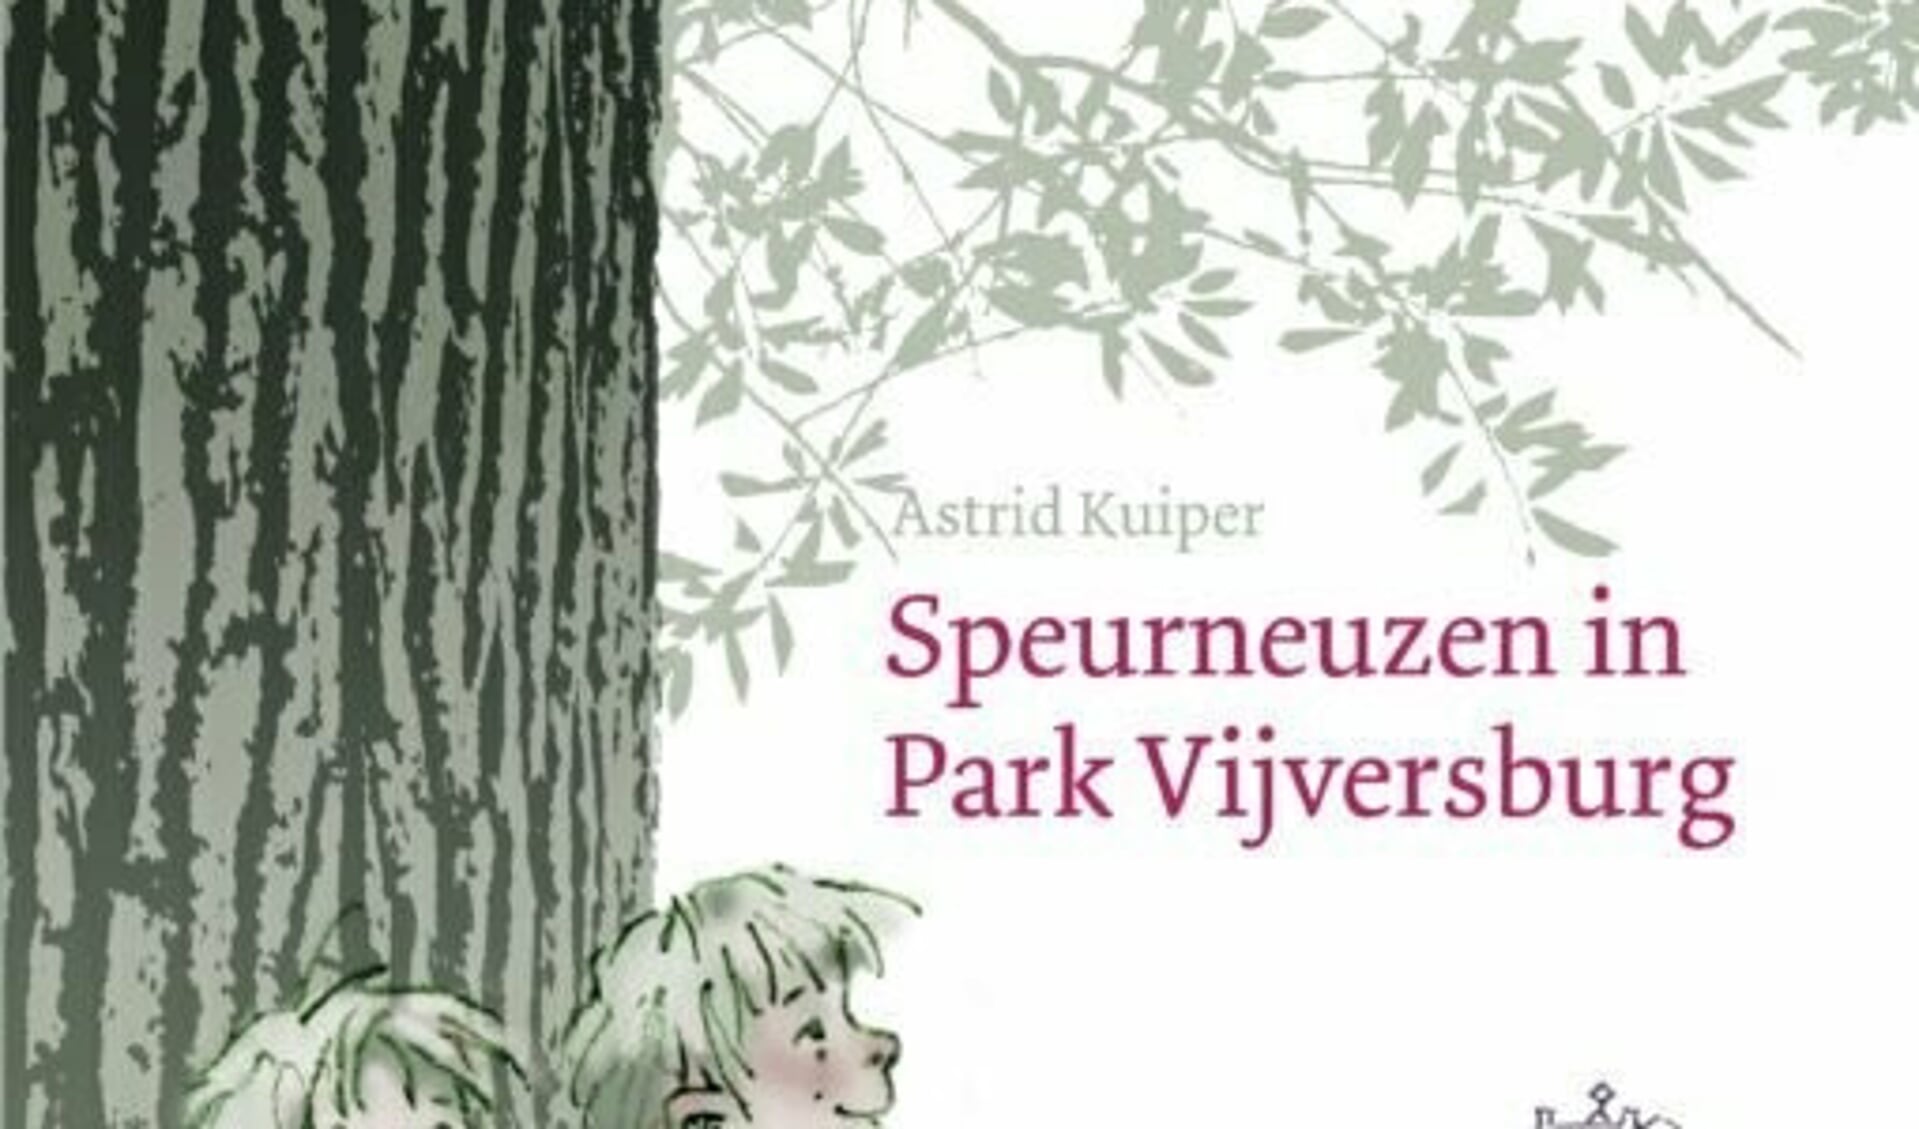 Speurneuzen in Park Vijversburg door Astrid Kuiper